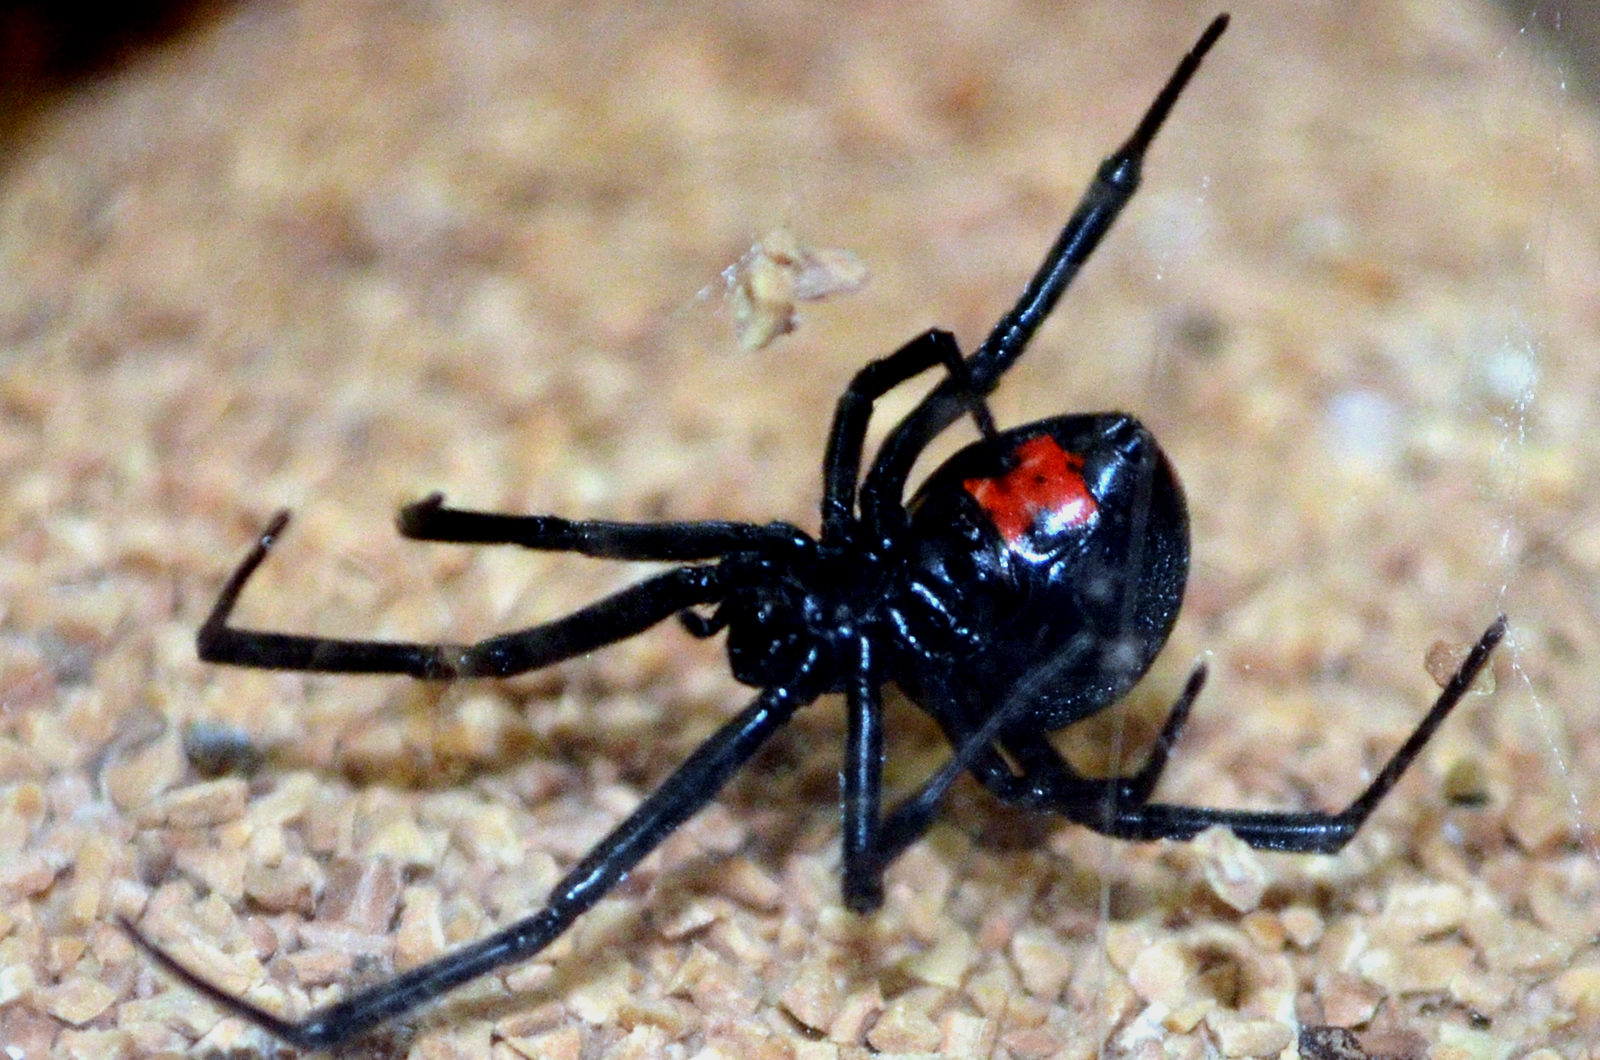 widower spider